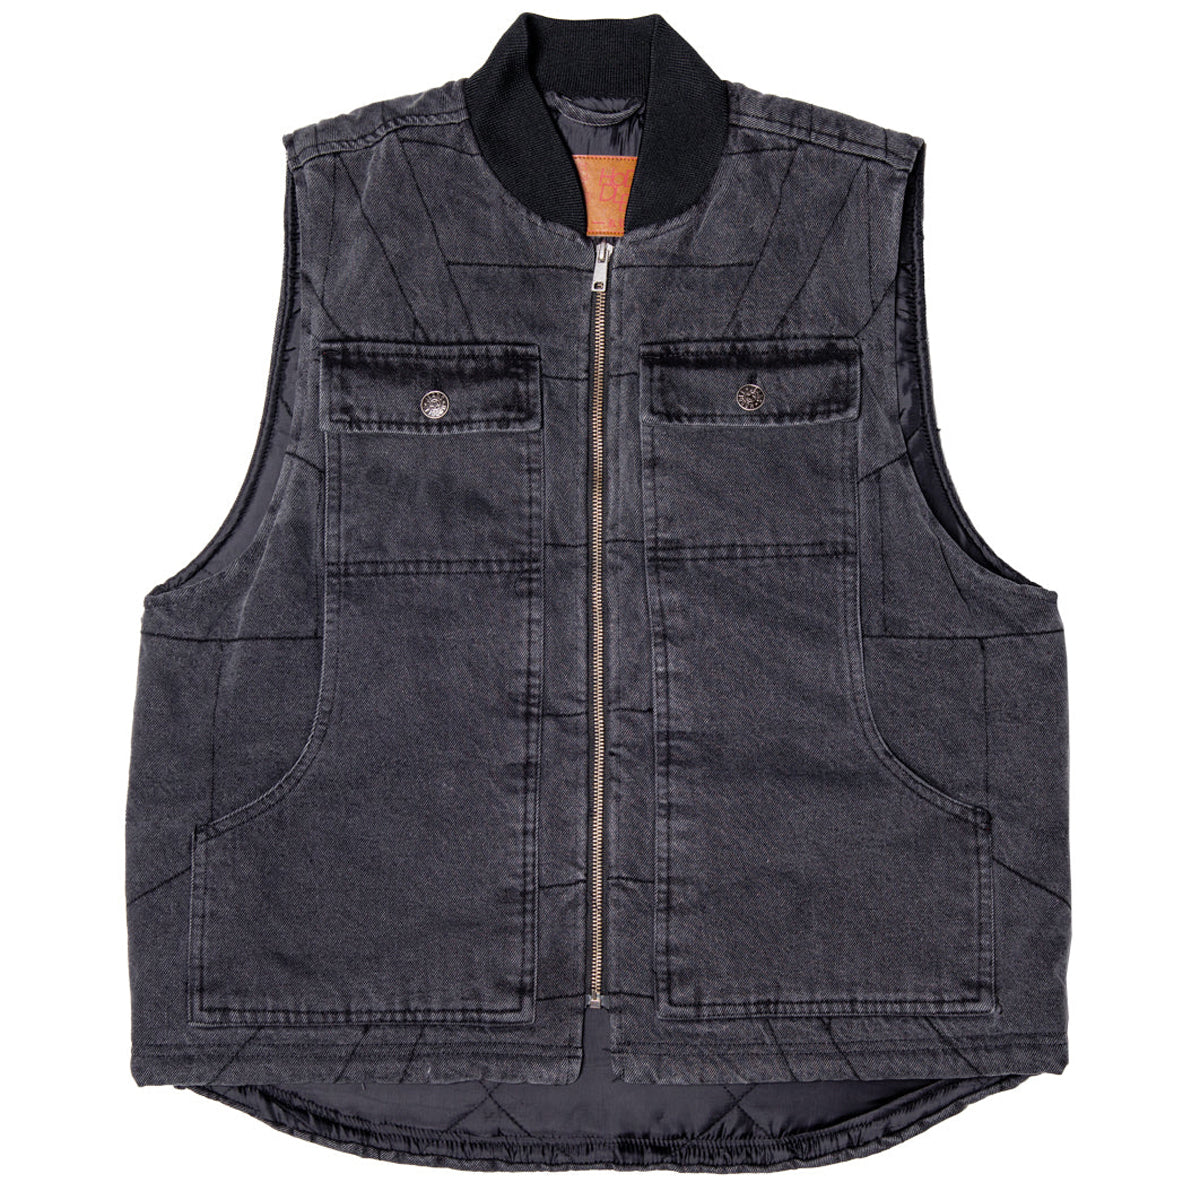 Hoddle Zip Up Carpenter Vest - Black Denim Wash image 1